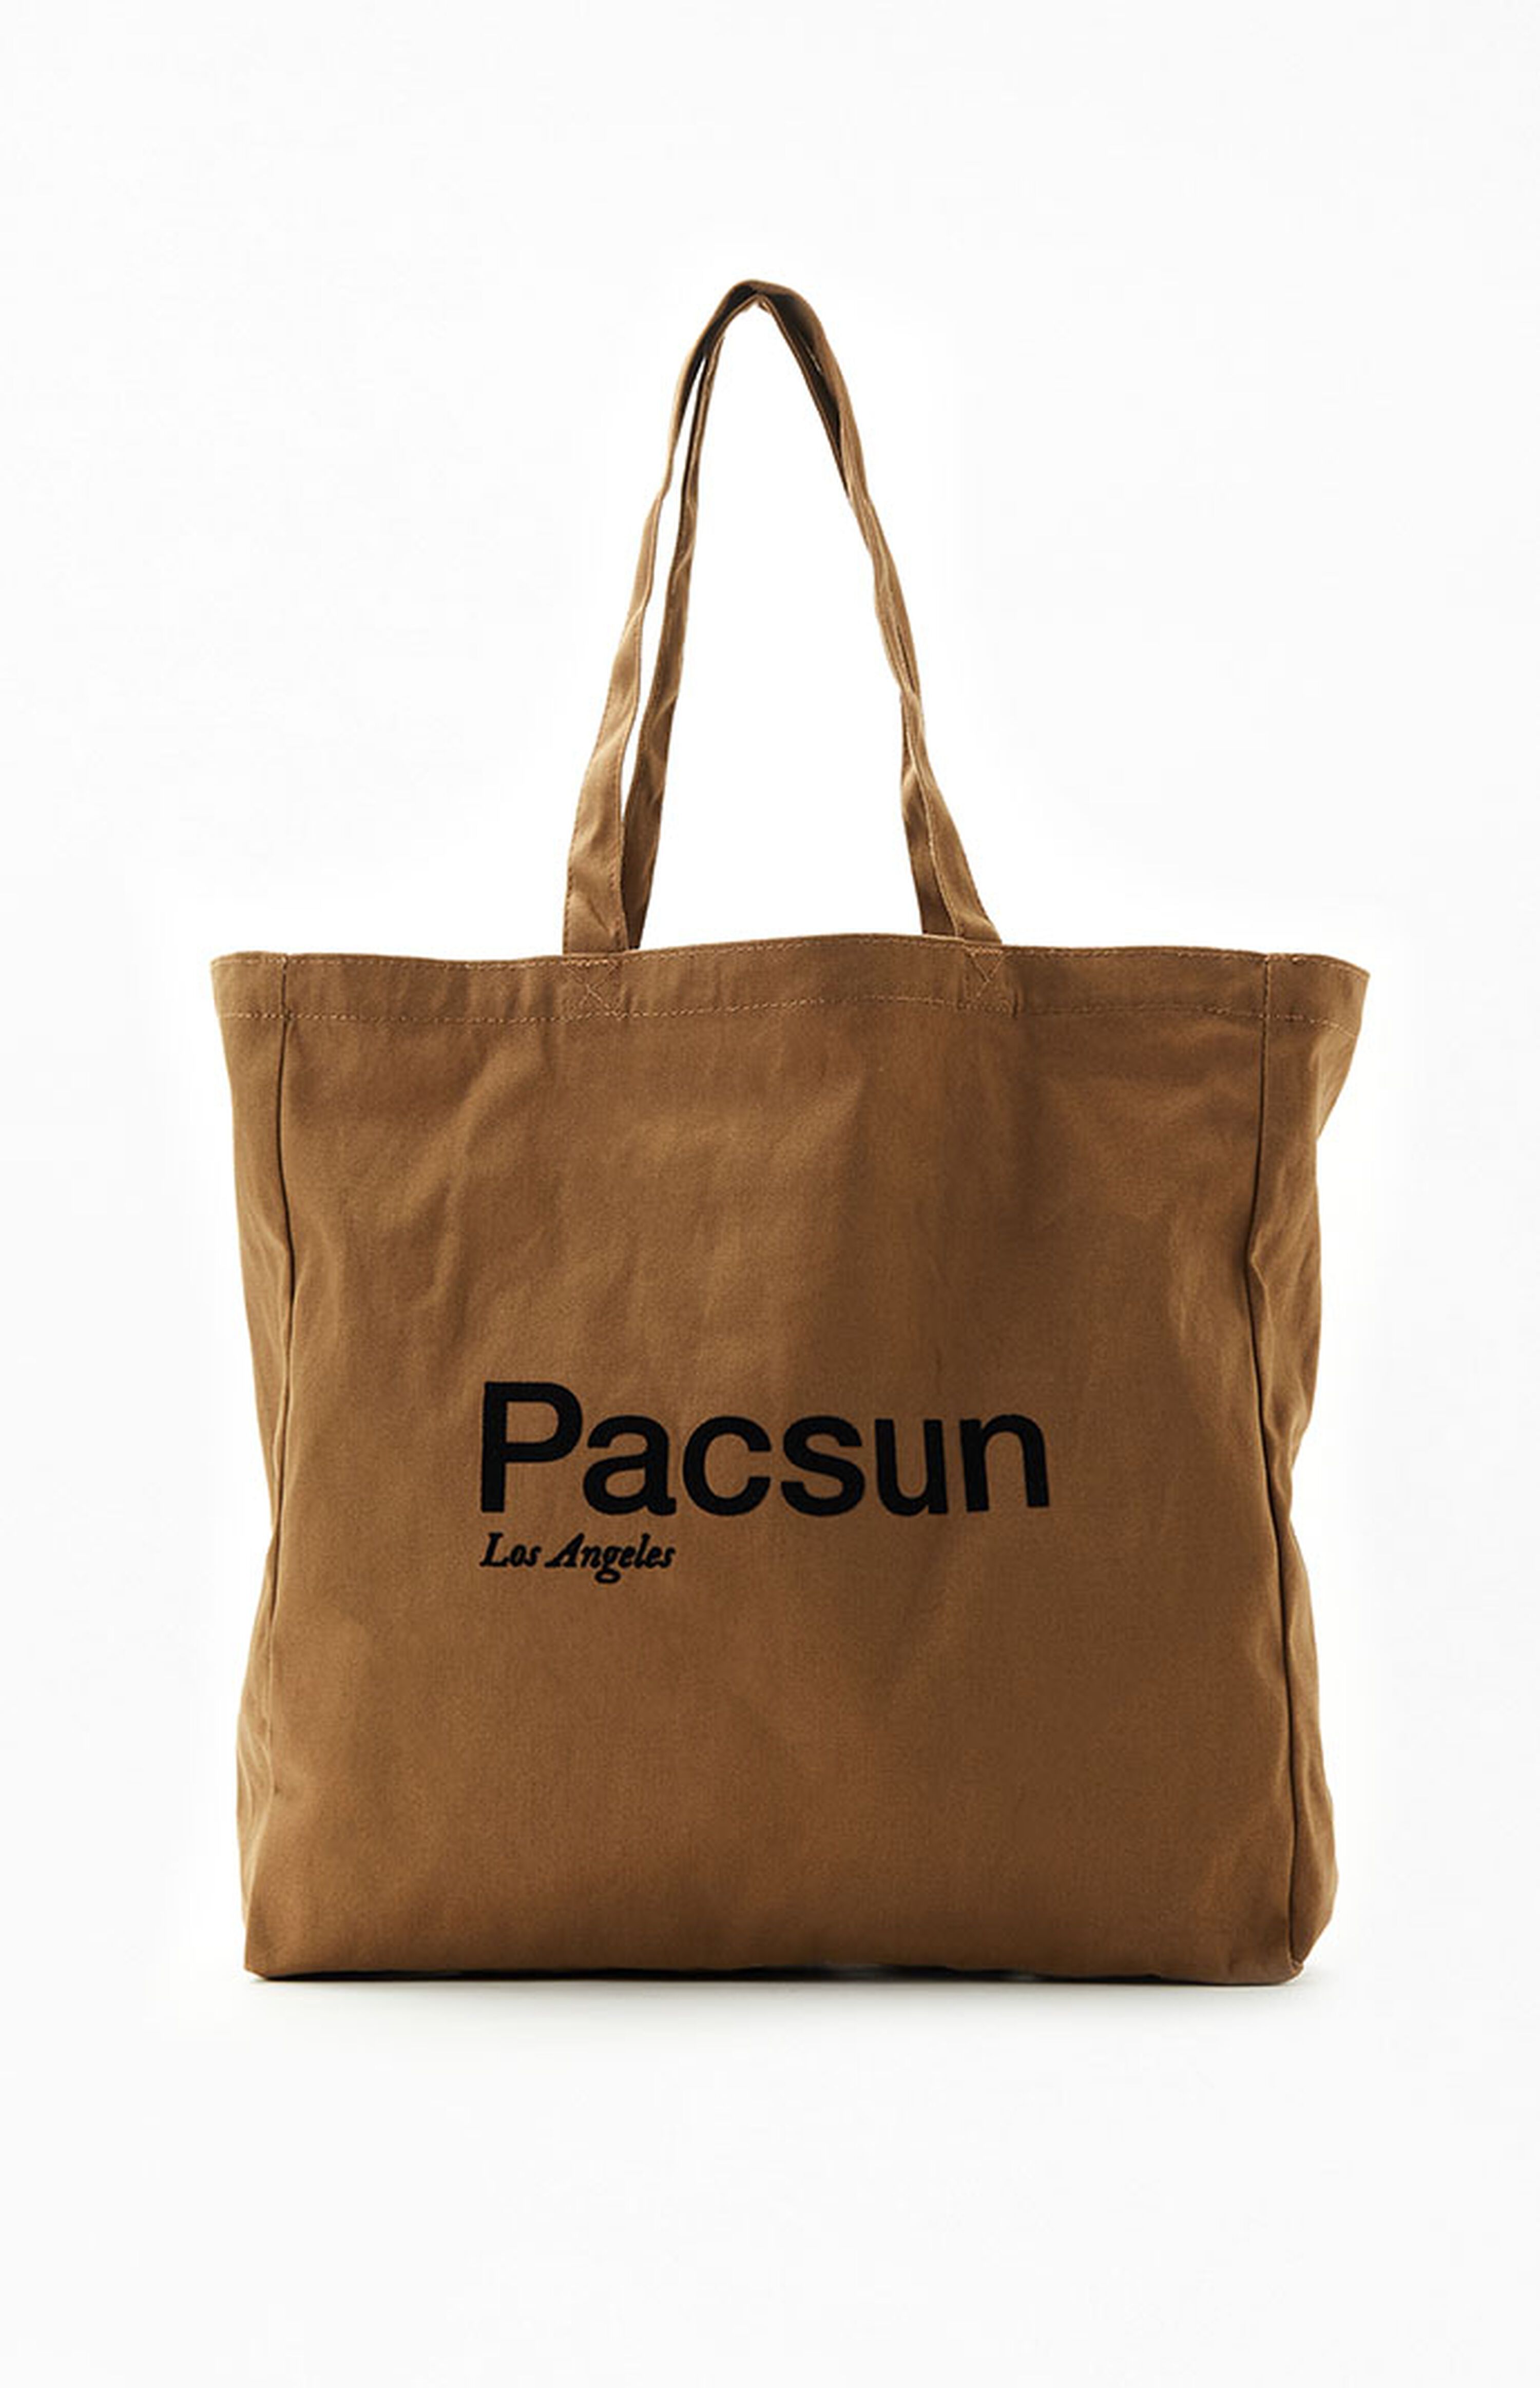 PacSun Los Angeles Tote Bag | PacSun